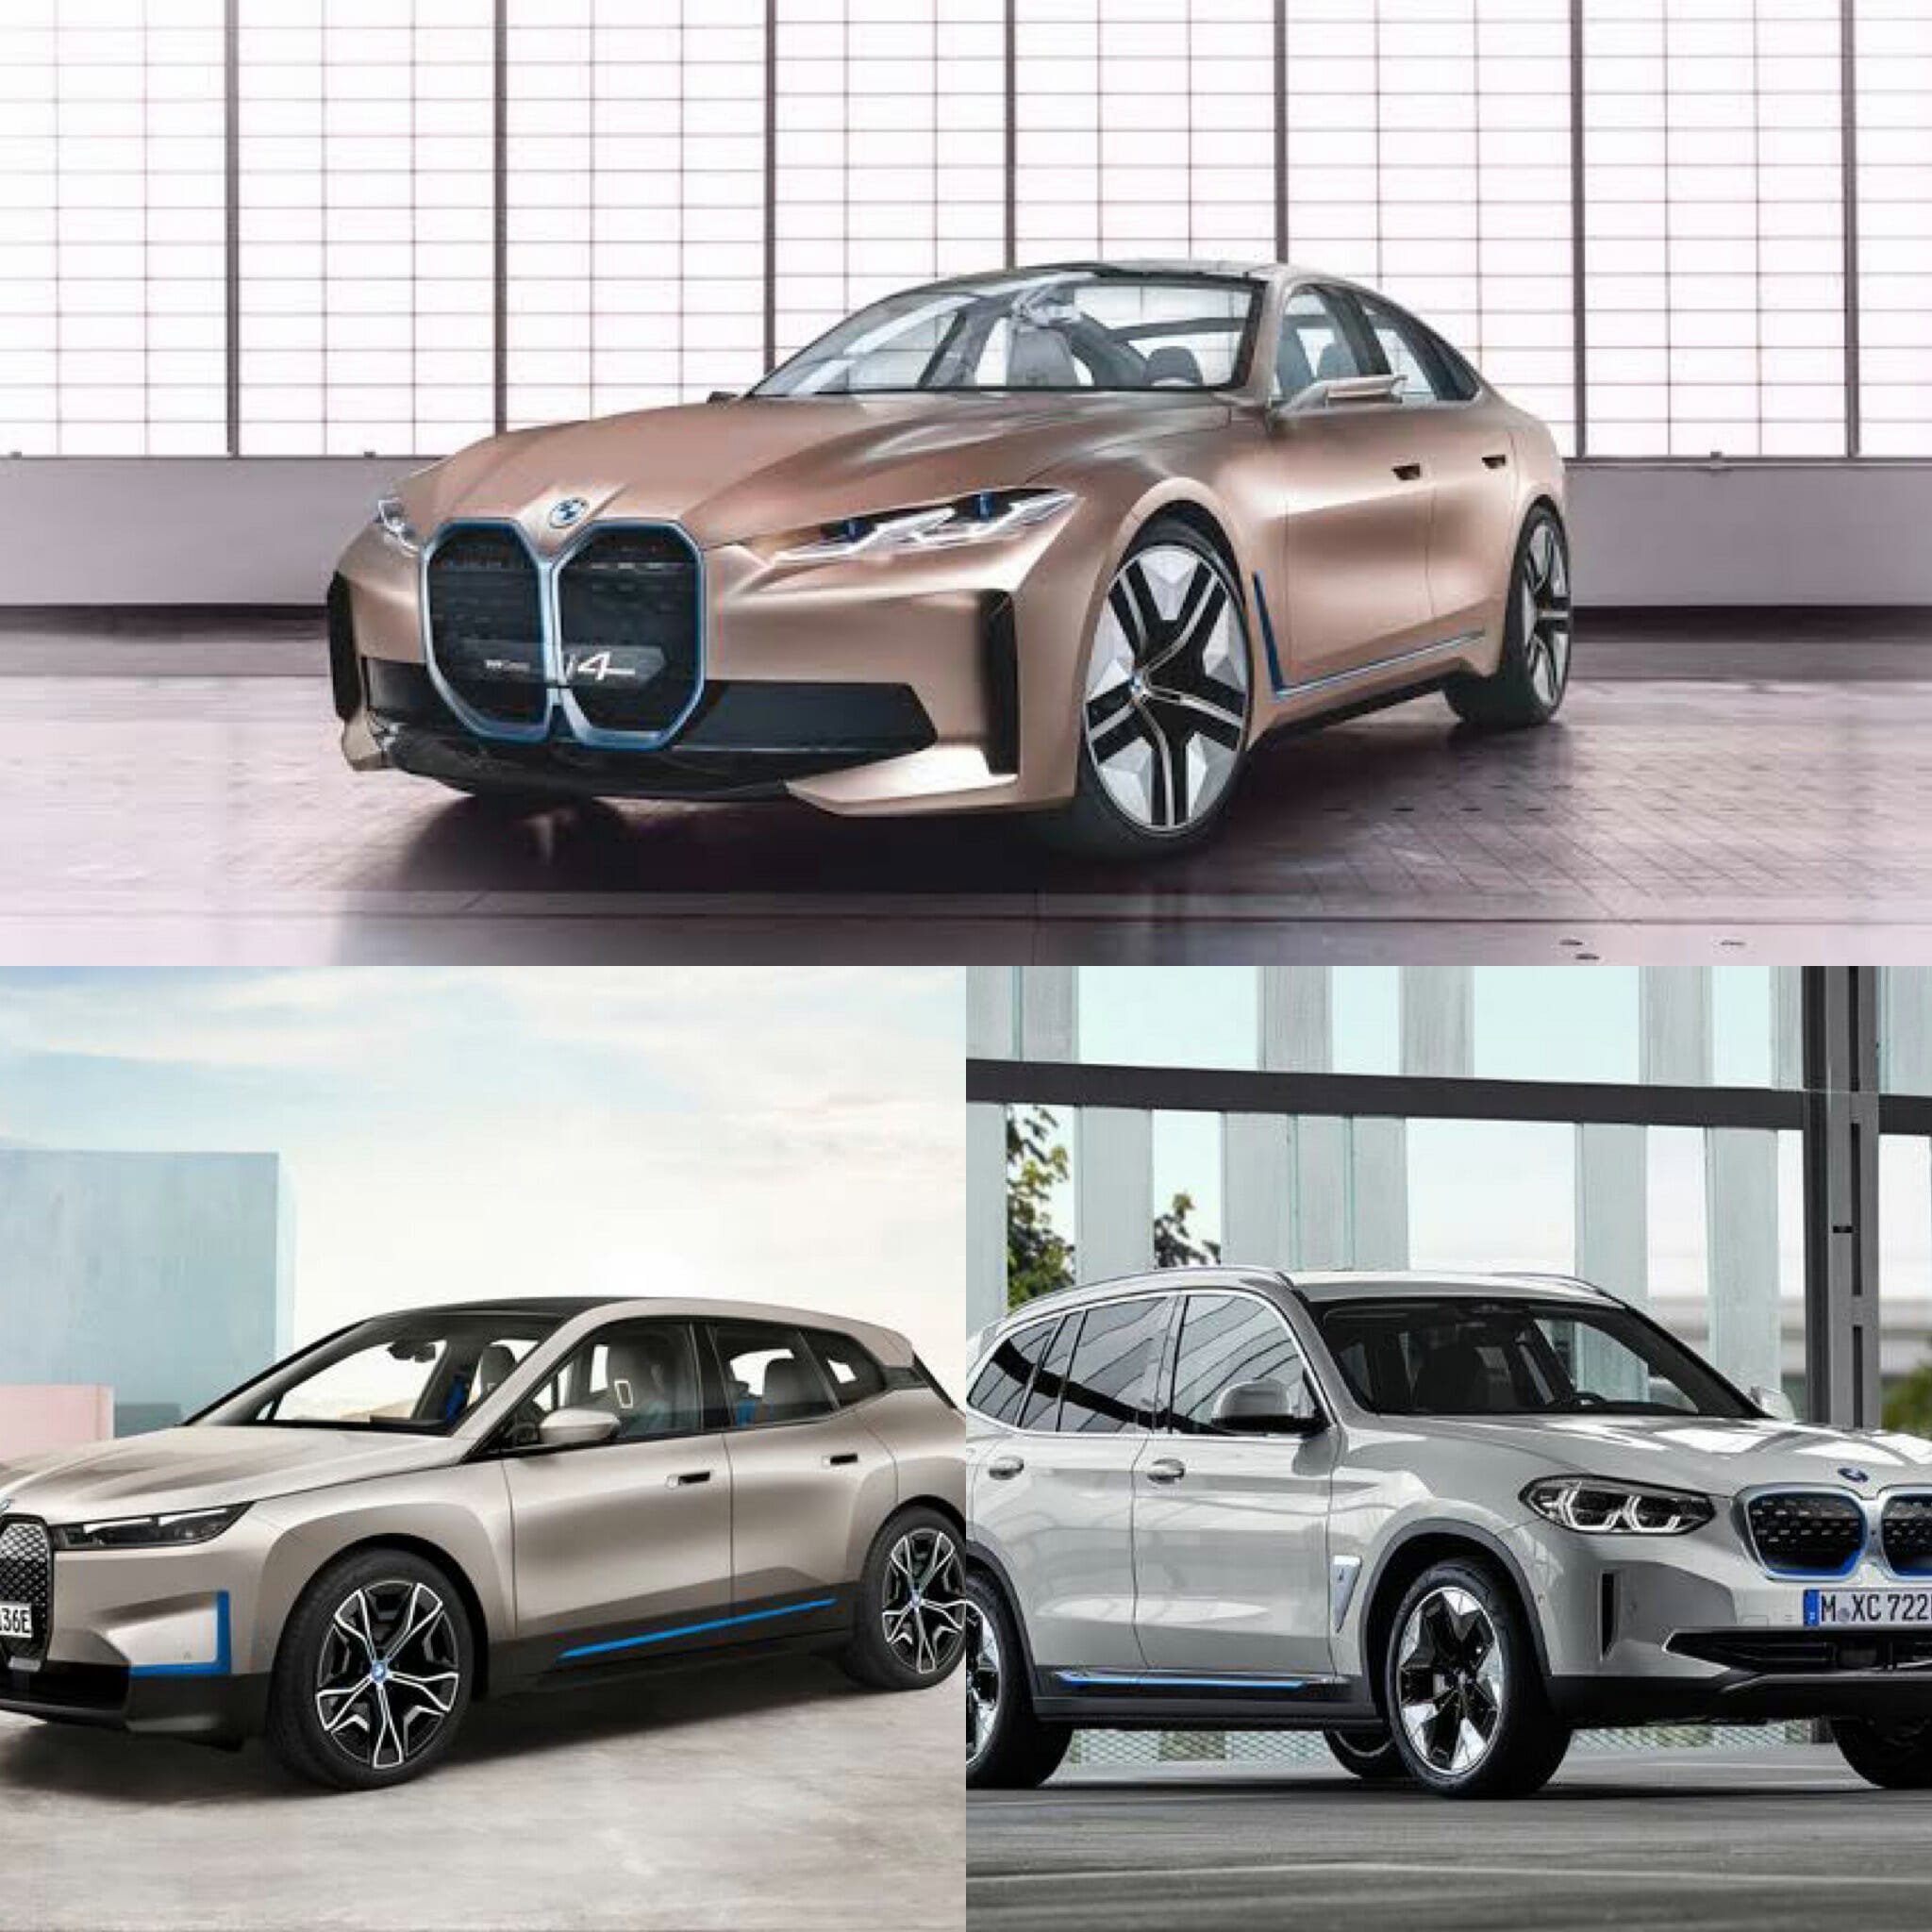 BMWが2021年に投入する電気自動車